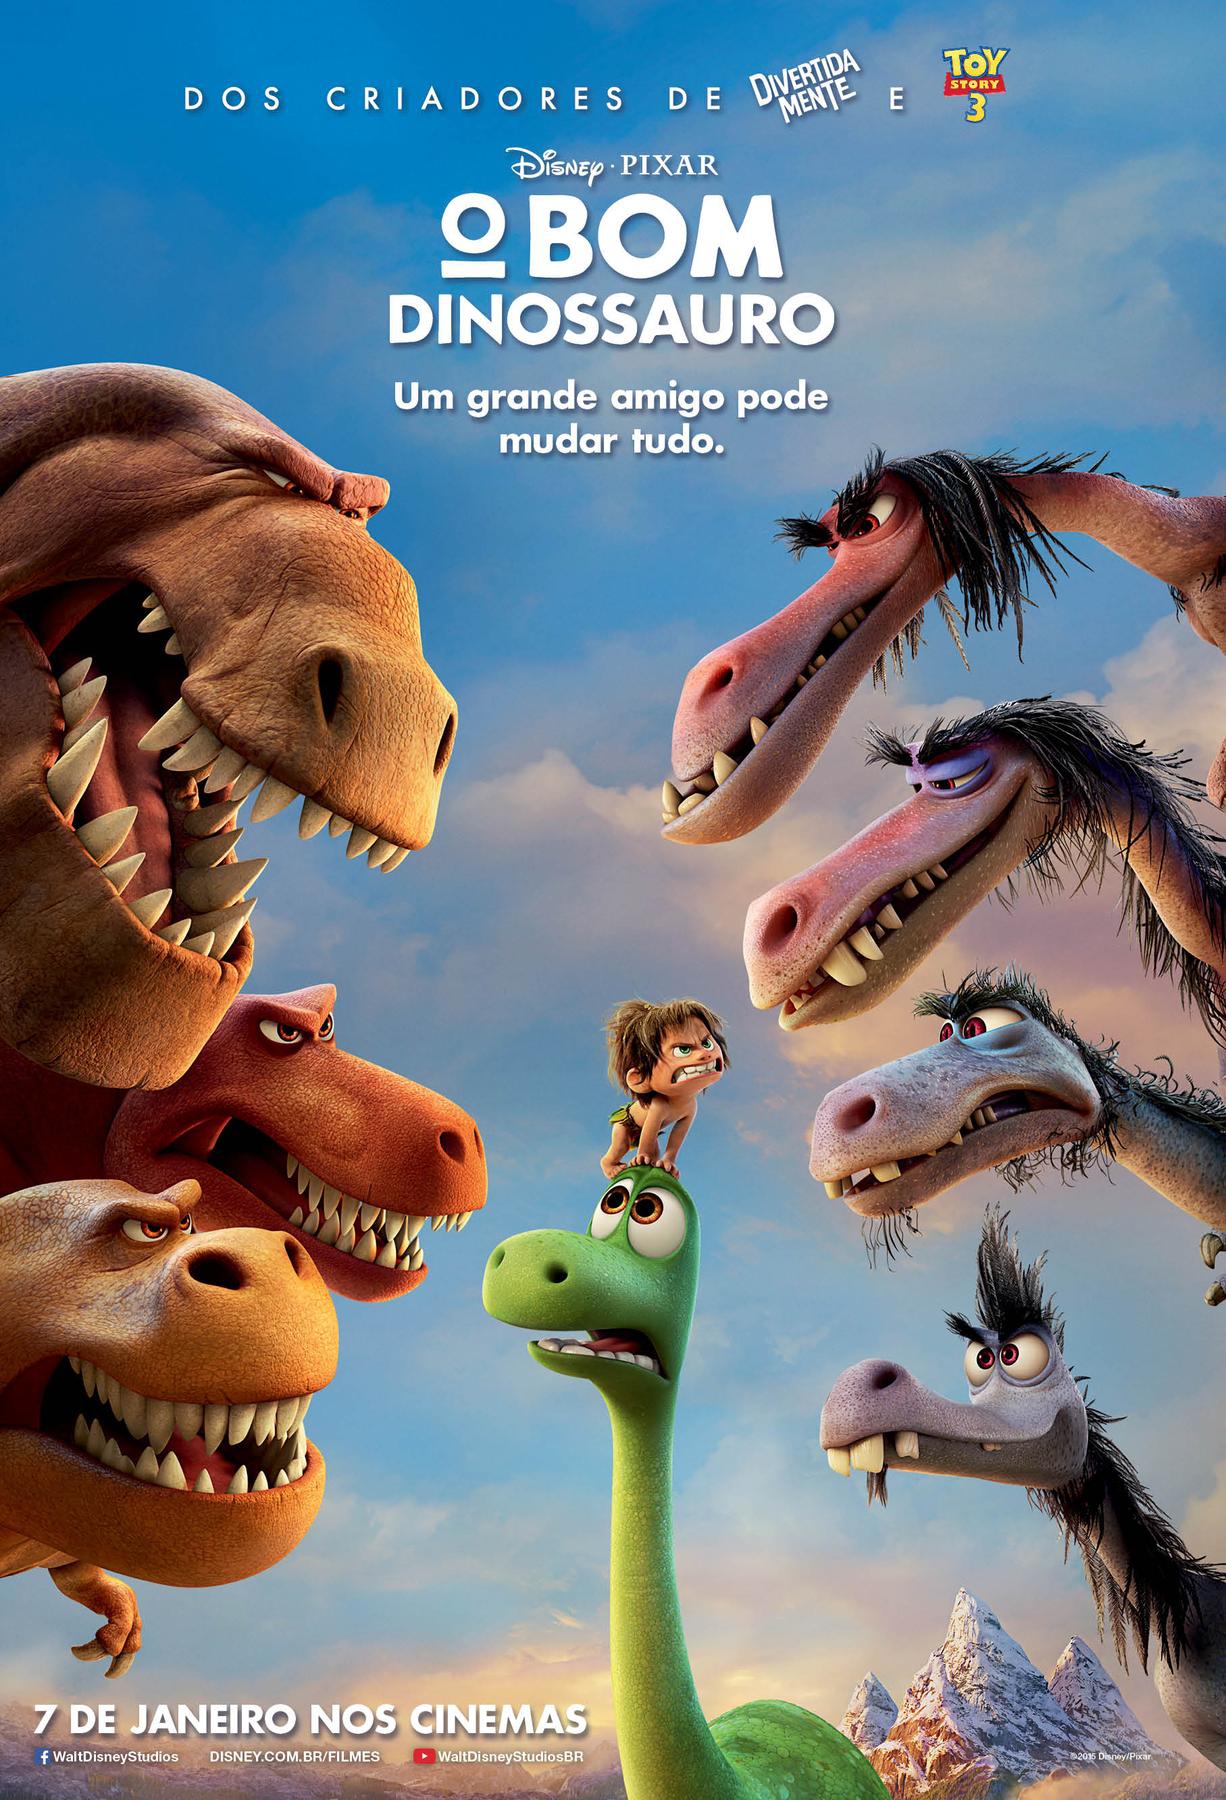  O Bom Dinossauro (2015) Poster 